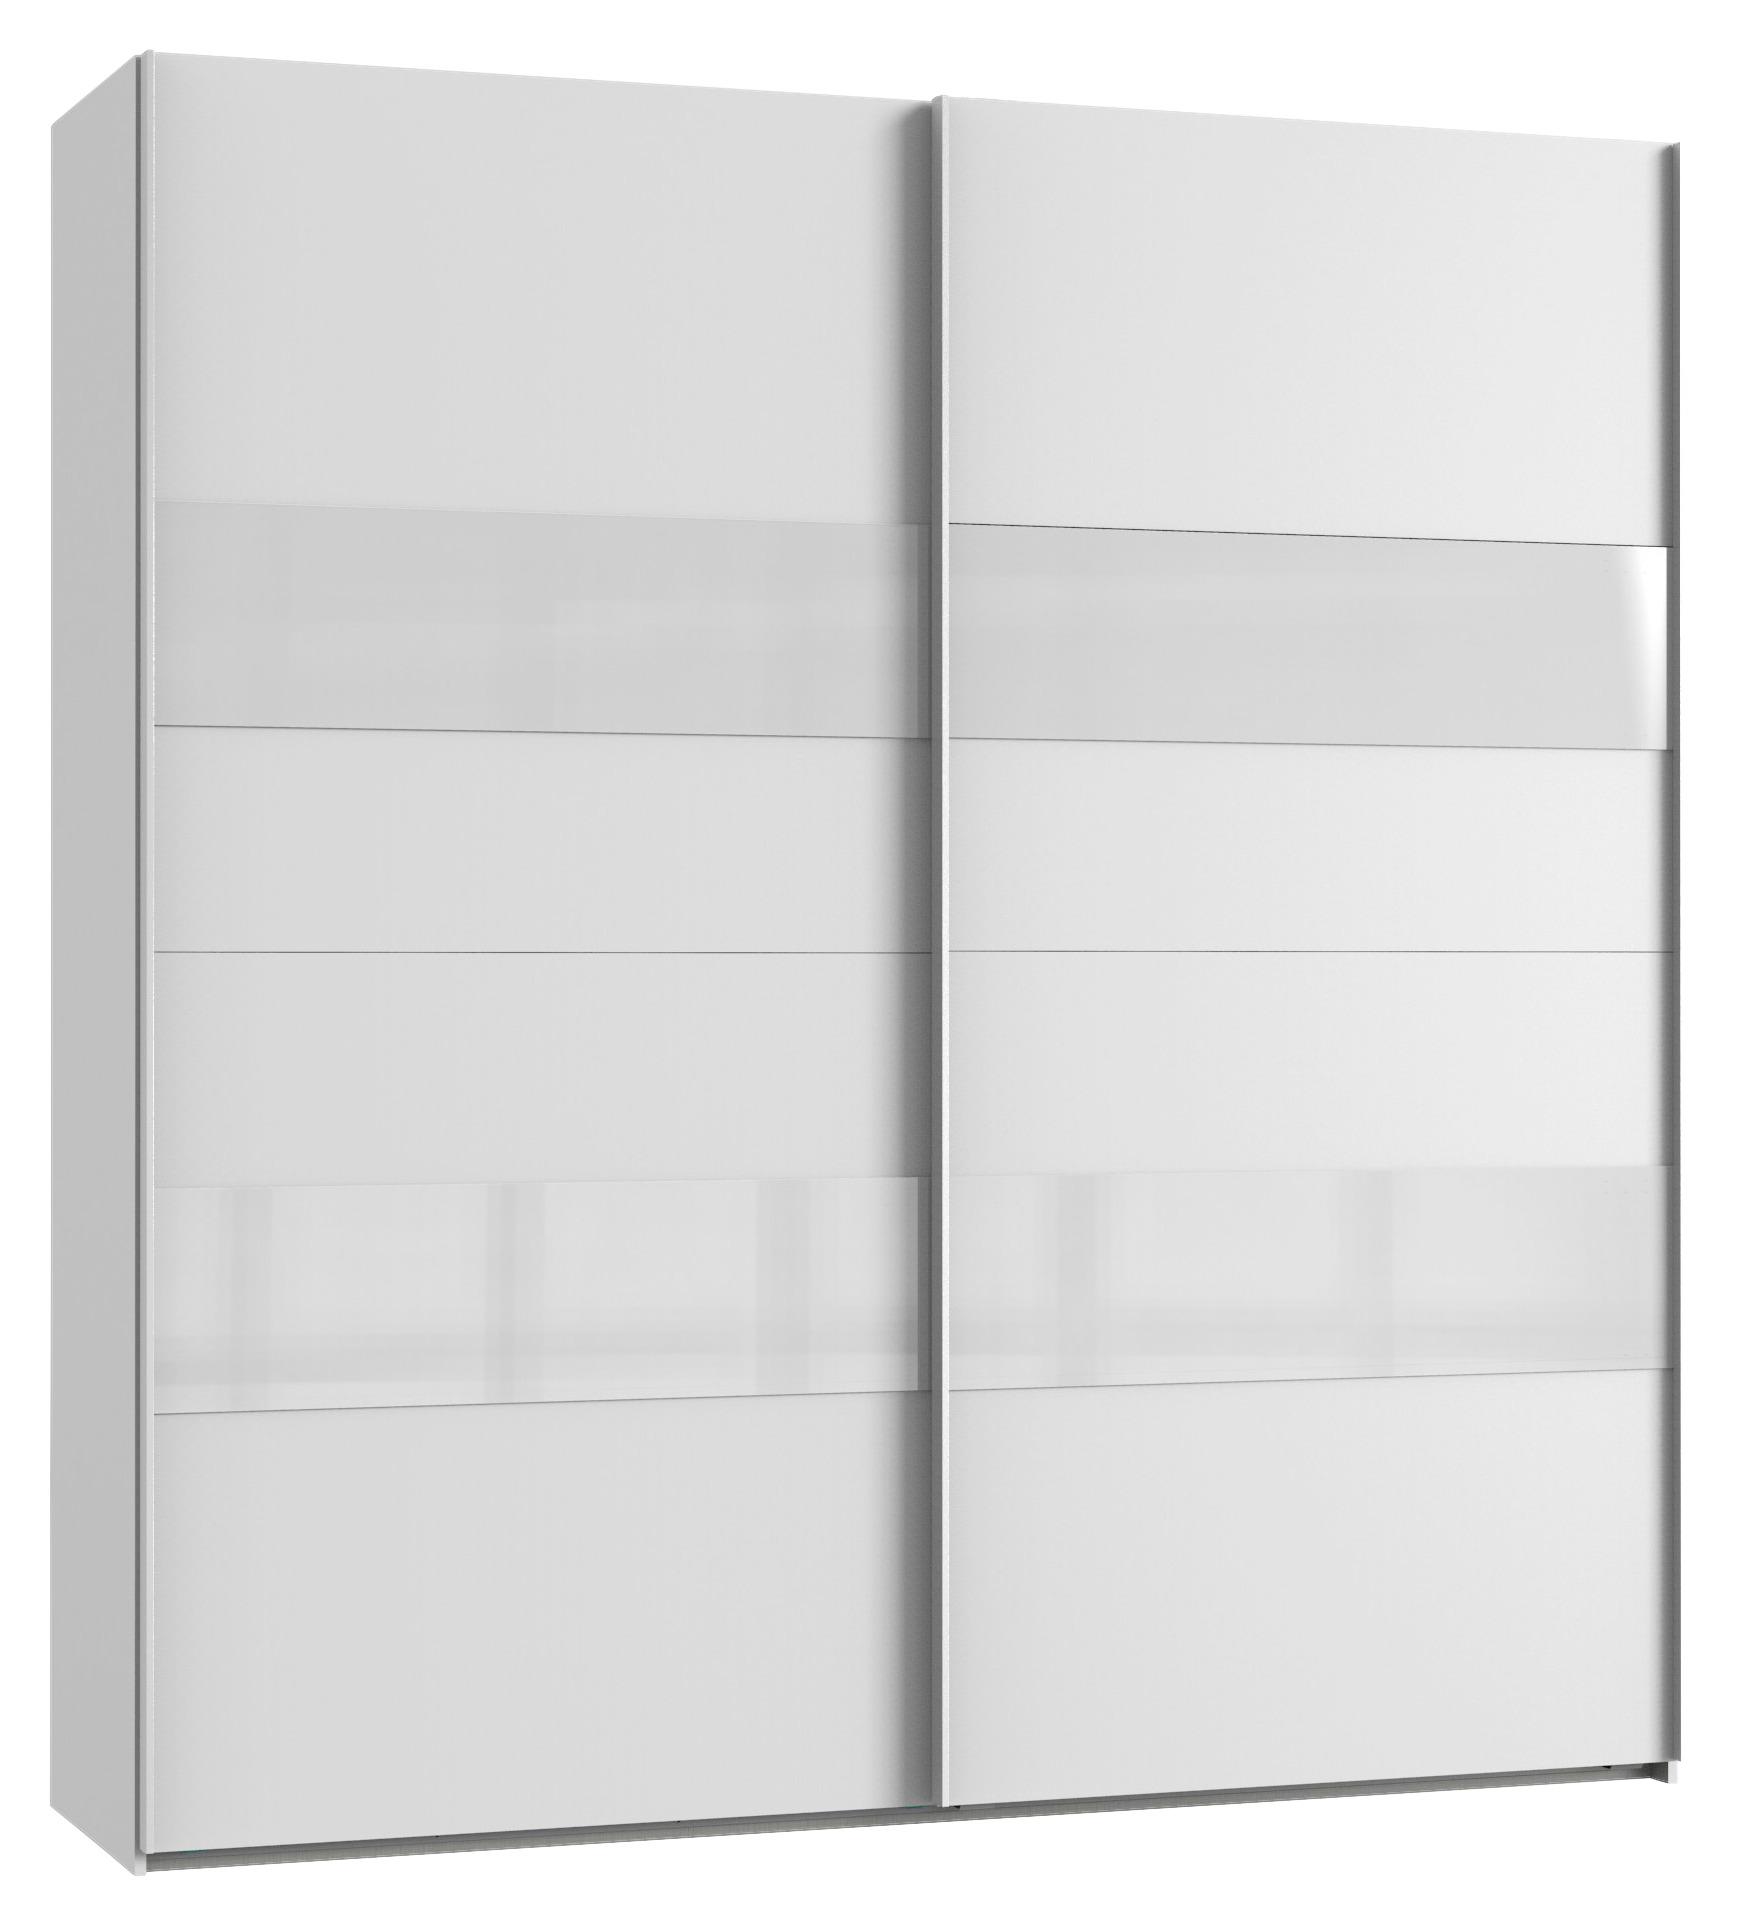 Schwebetürenschrank in Weiß - Weiß, KONVENTIONELL, Holzwerkstoff/Metall (135/200/64cm) - Modern Living